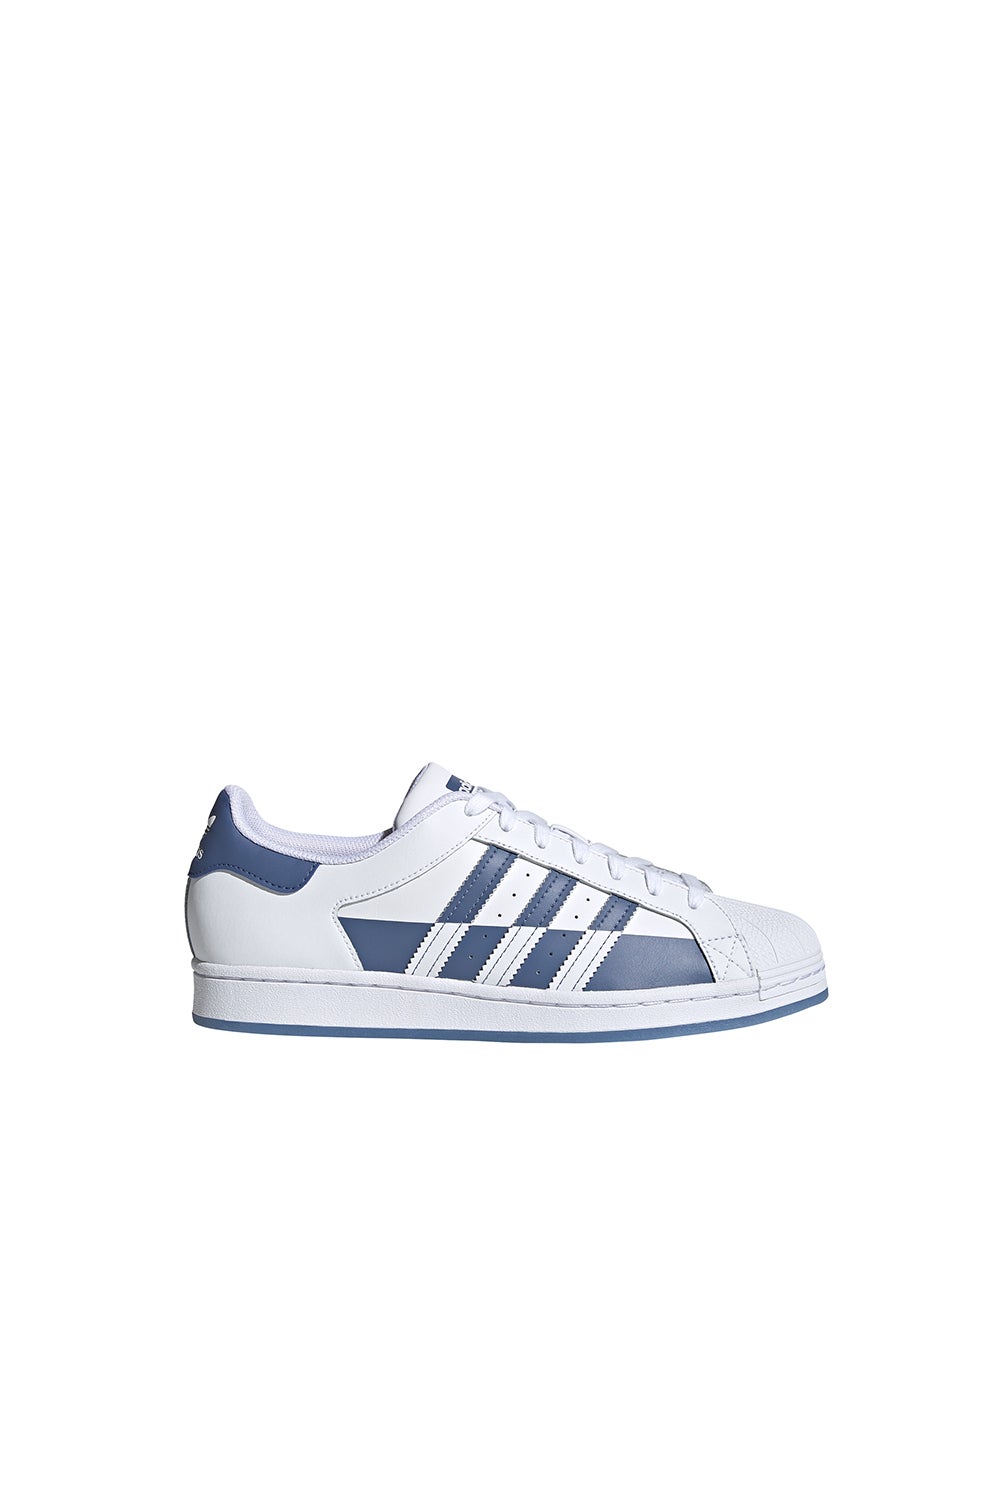 adidas Superstar White/Blue